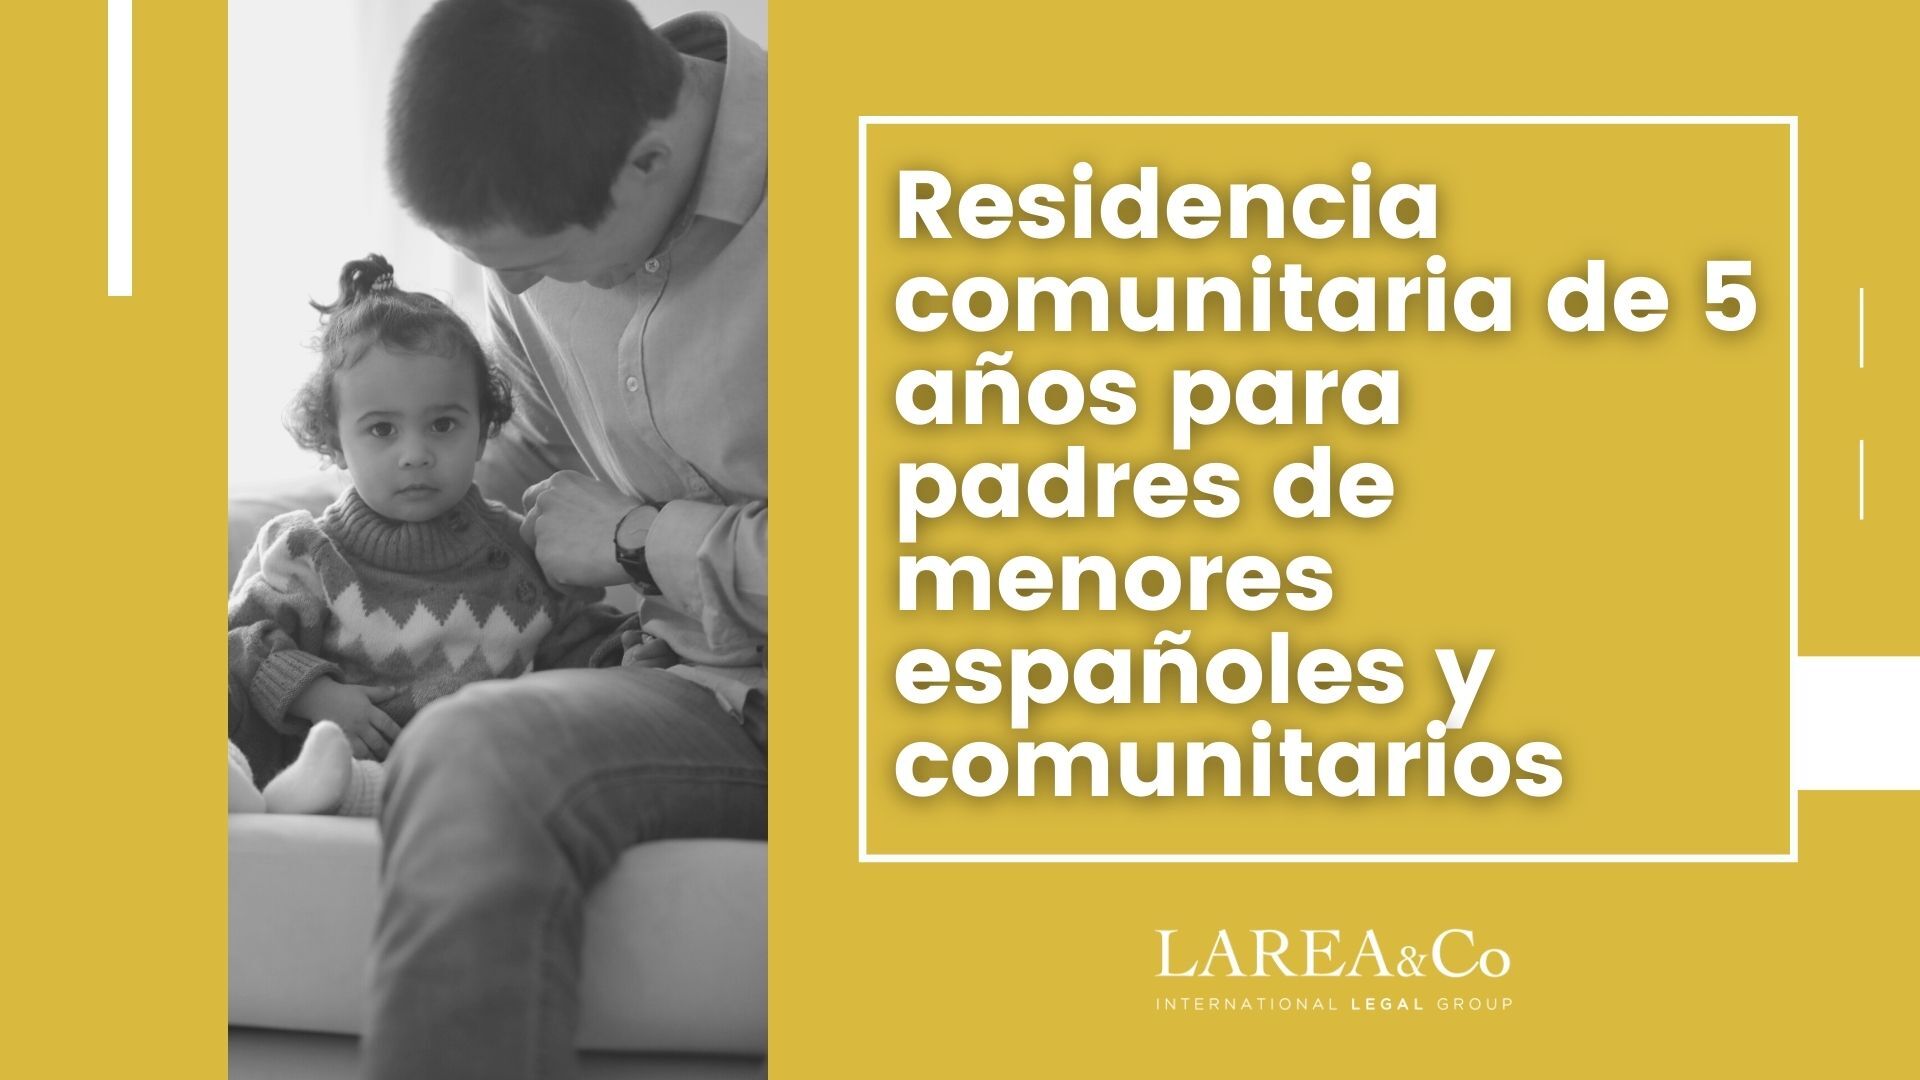 Residencia comunitaria de 5 años para padres de menores españoles y comunitarios